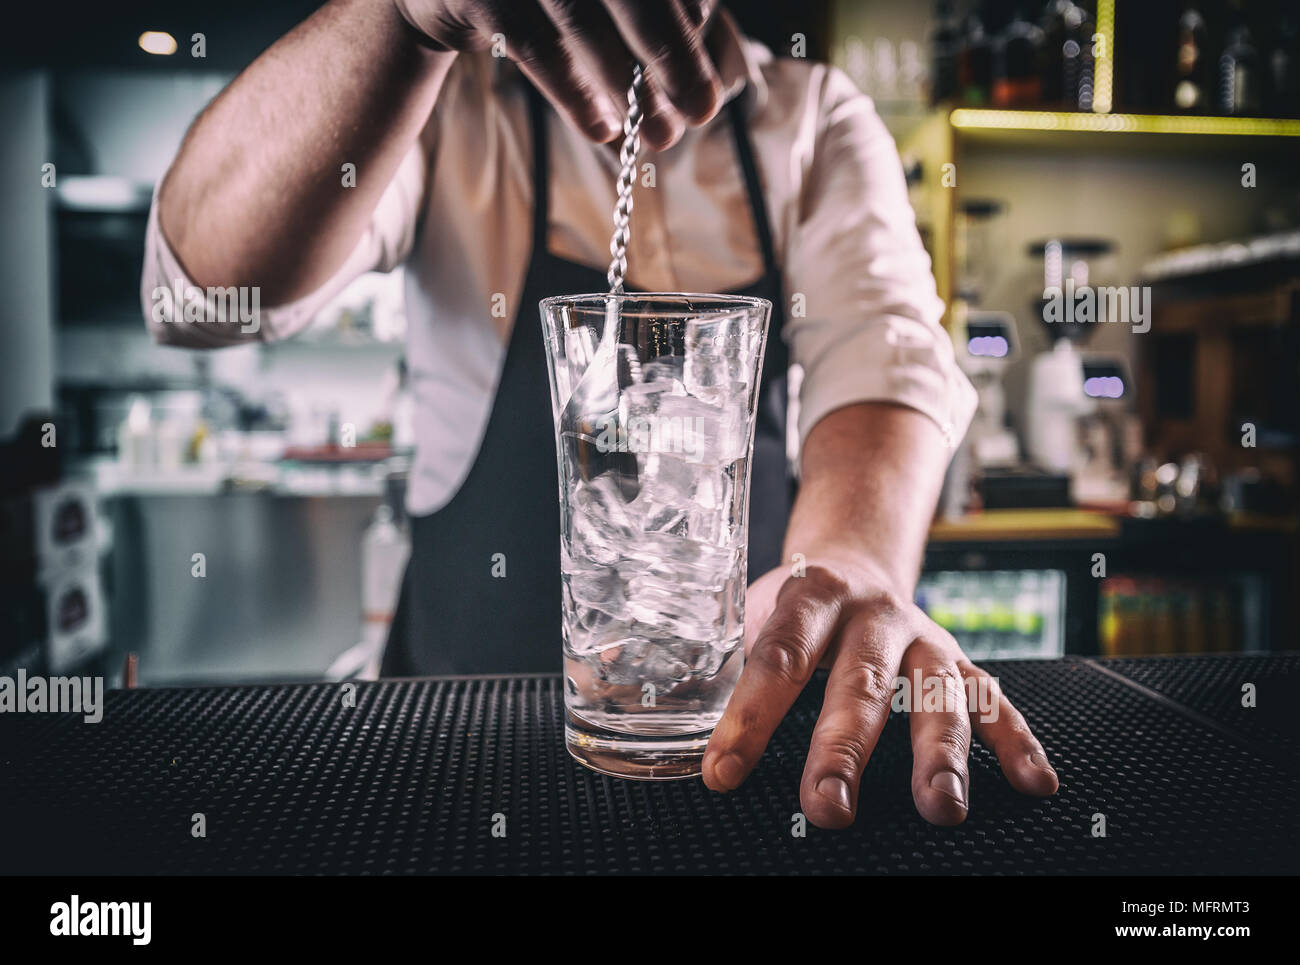 https://c8.alamy.com/compit/mfrmt3/professional-bartender-al-lavoro-nel-bar-di-ghiaccio-di-miscelazione-con-vodka-in-vetro-per-bere-mfrmt3.jpg